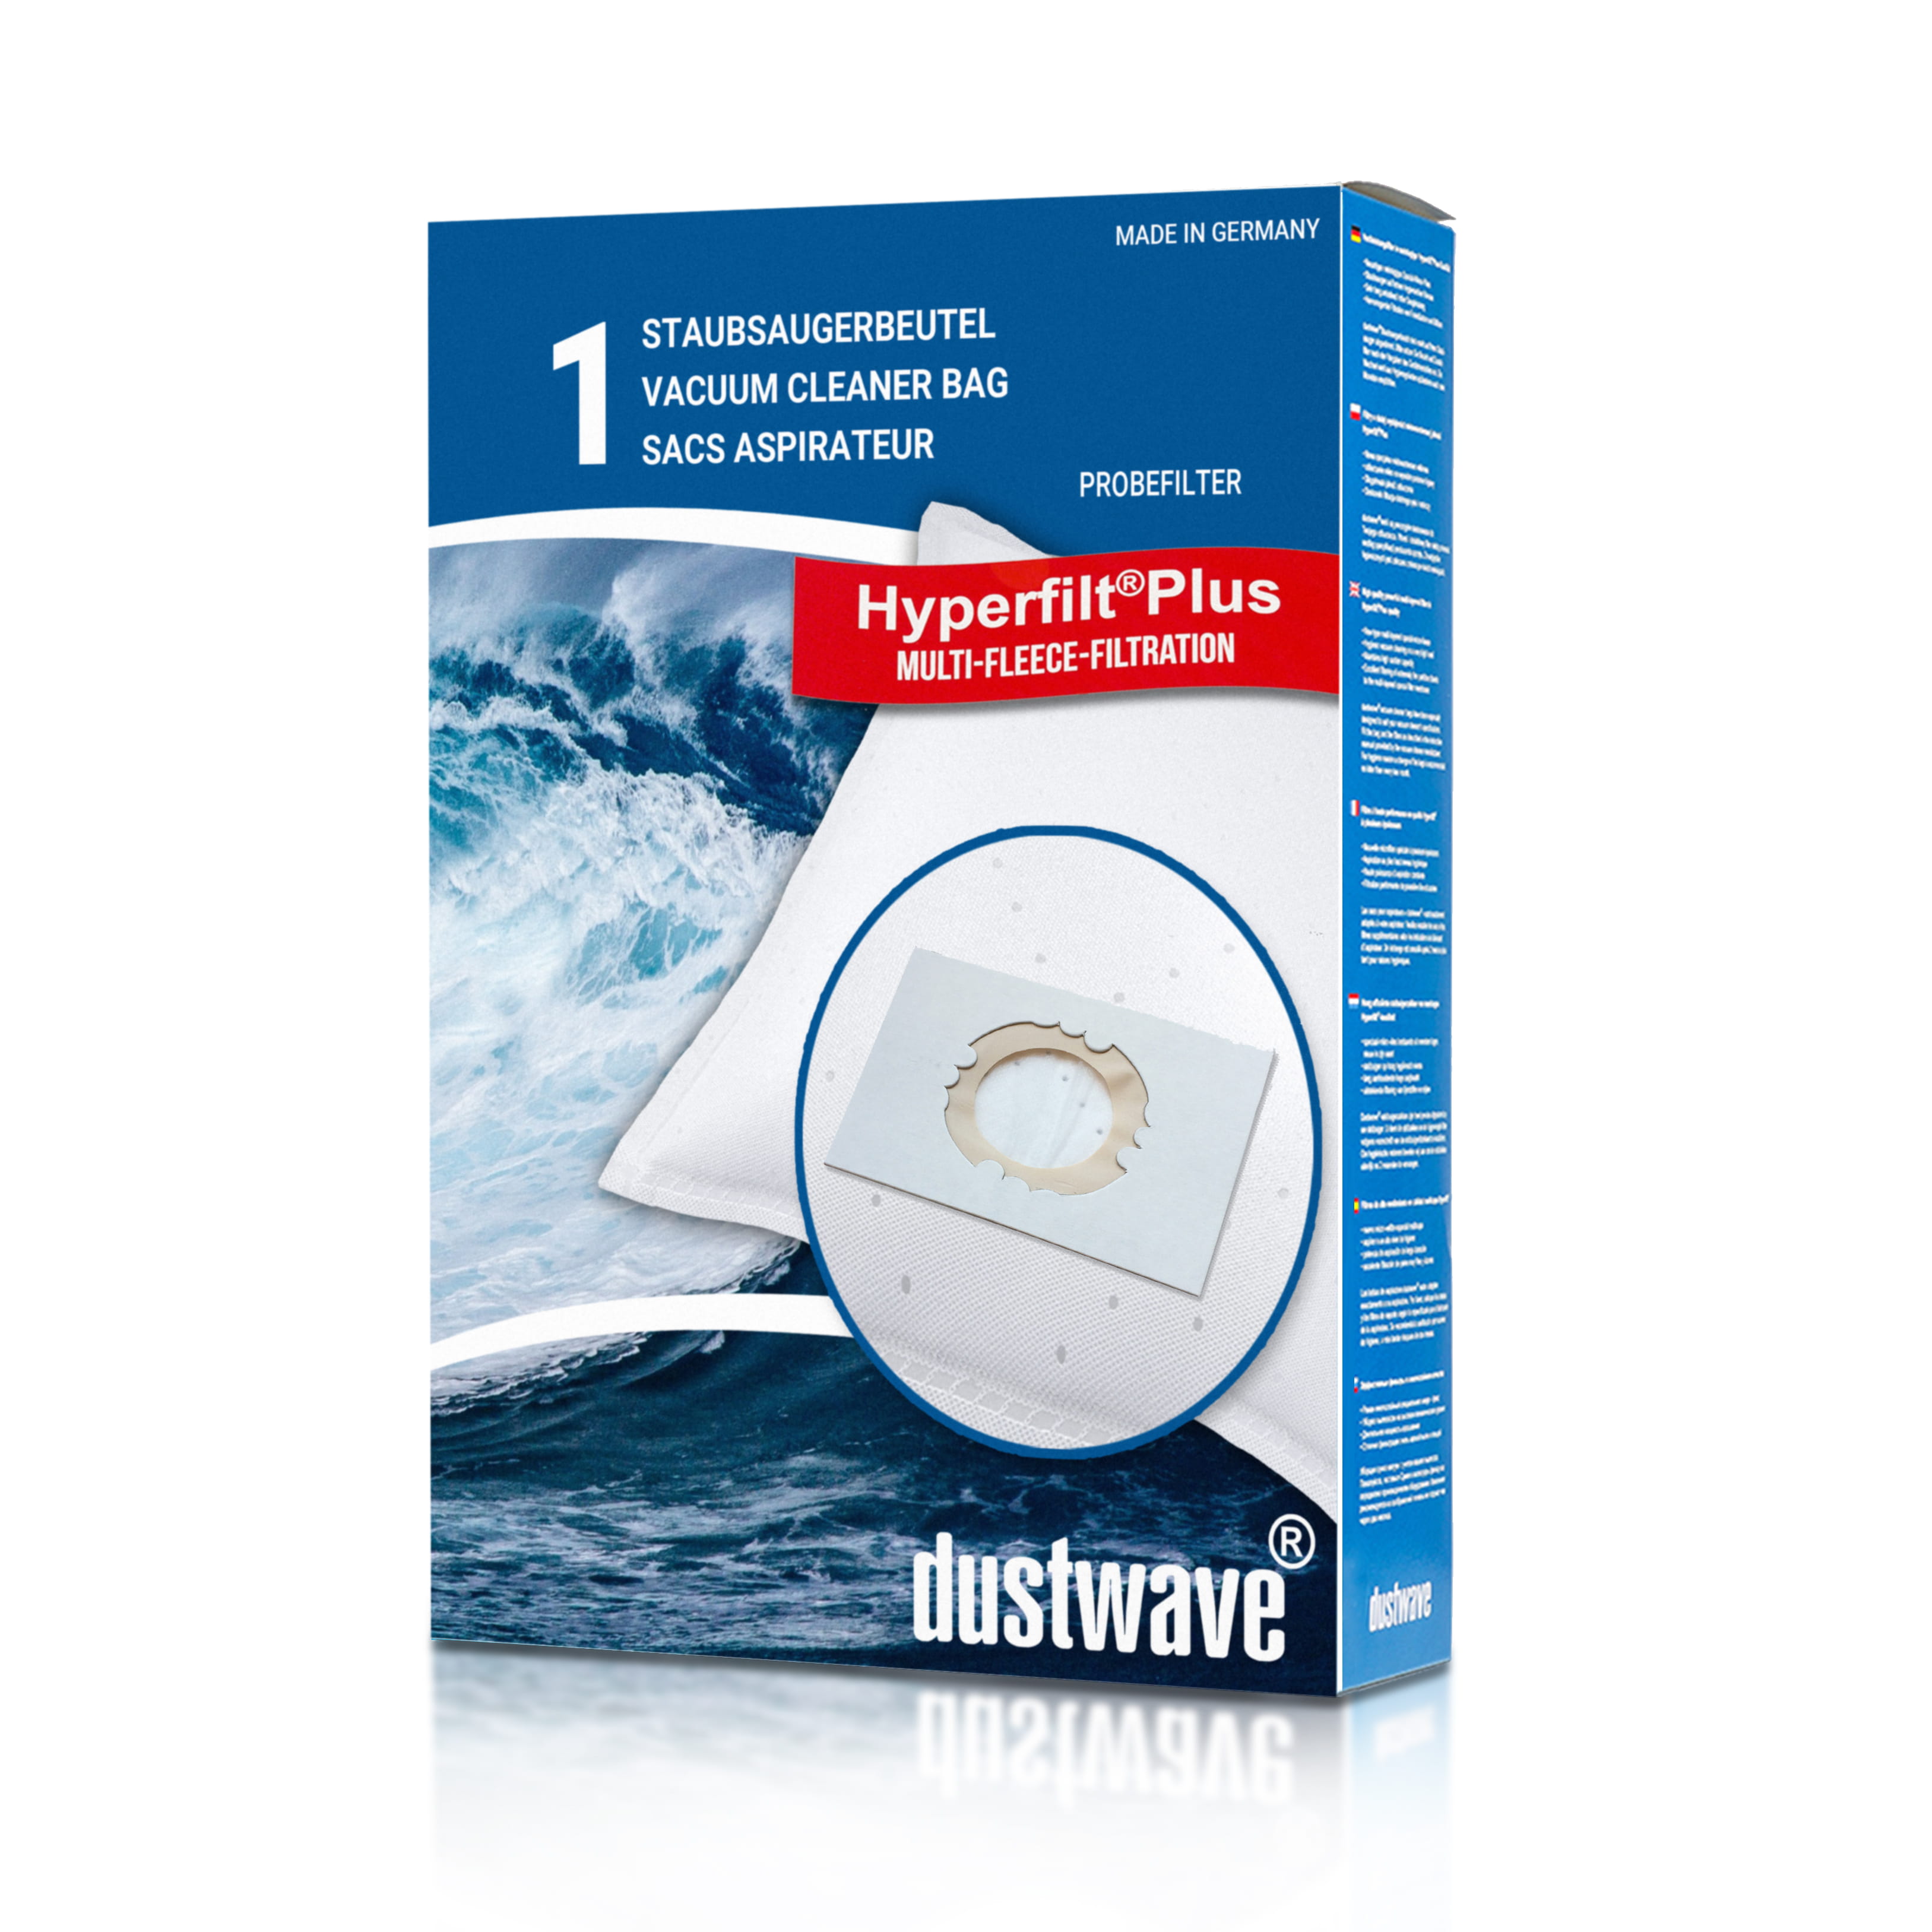 Dustwave® 1 Staubsaugerbeutel für Hoover KIT S 2040 - hocheffizient, mehrlagiges Mikrovlies mit Hygieneverschluss - Made in Germany